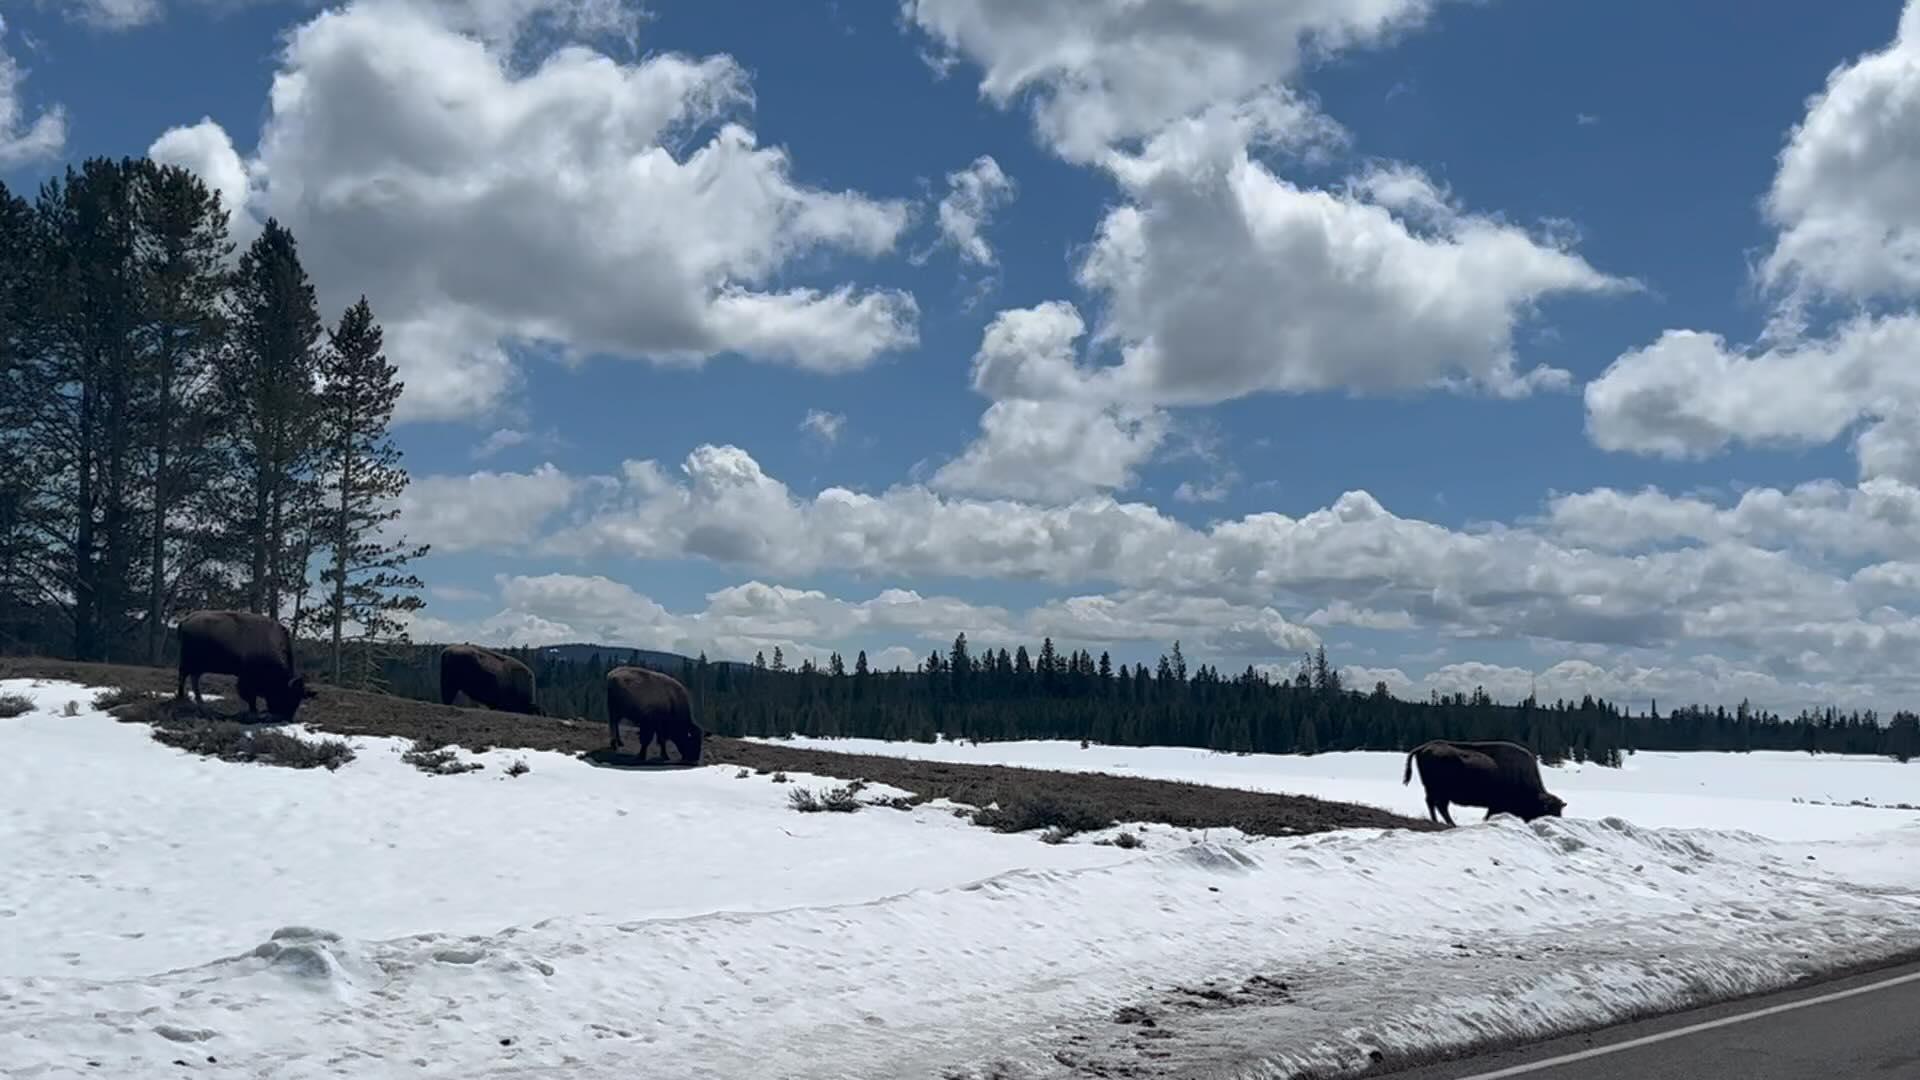 Alec Baldwin films the scenery in Yellowstone